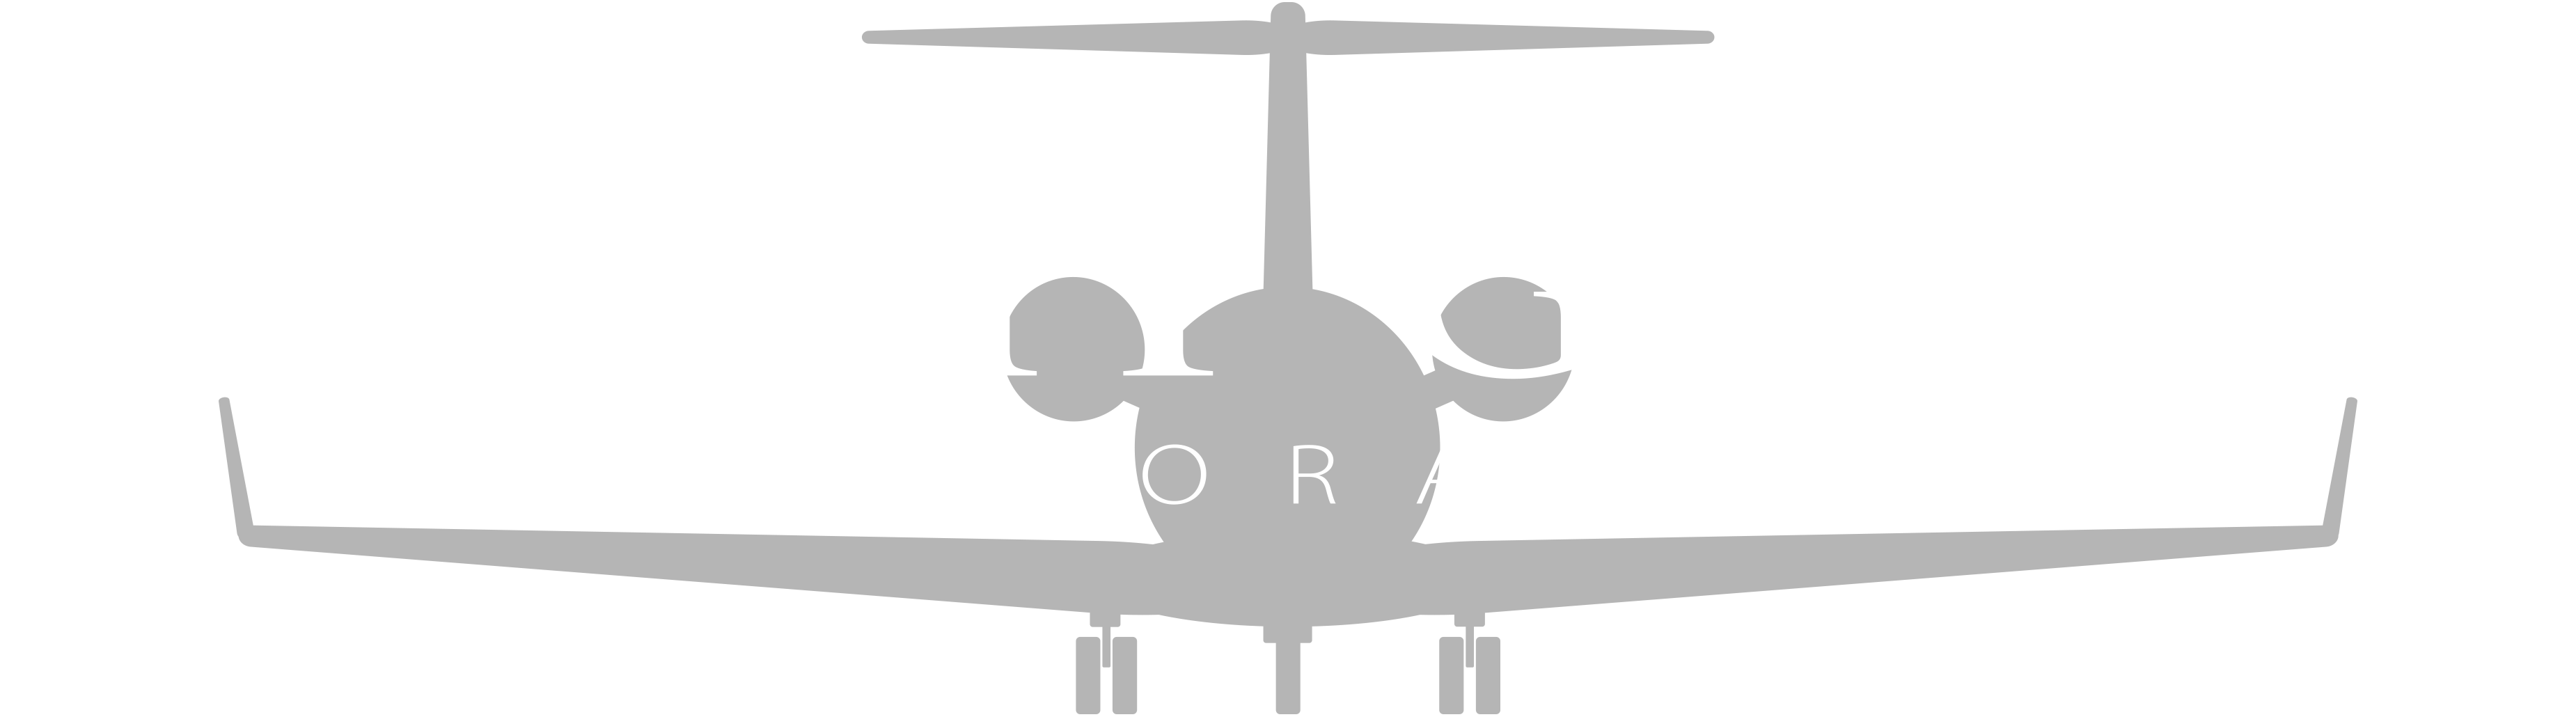 Charter-Plane-White-FGC-logo-png